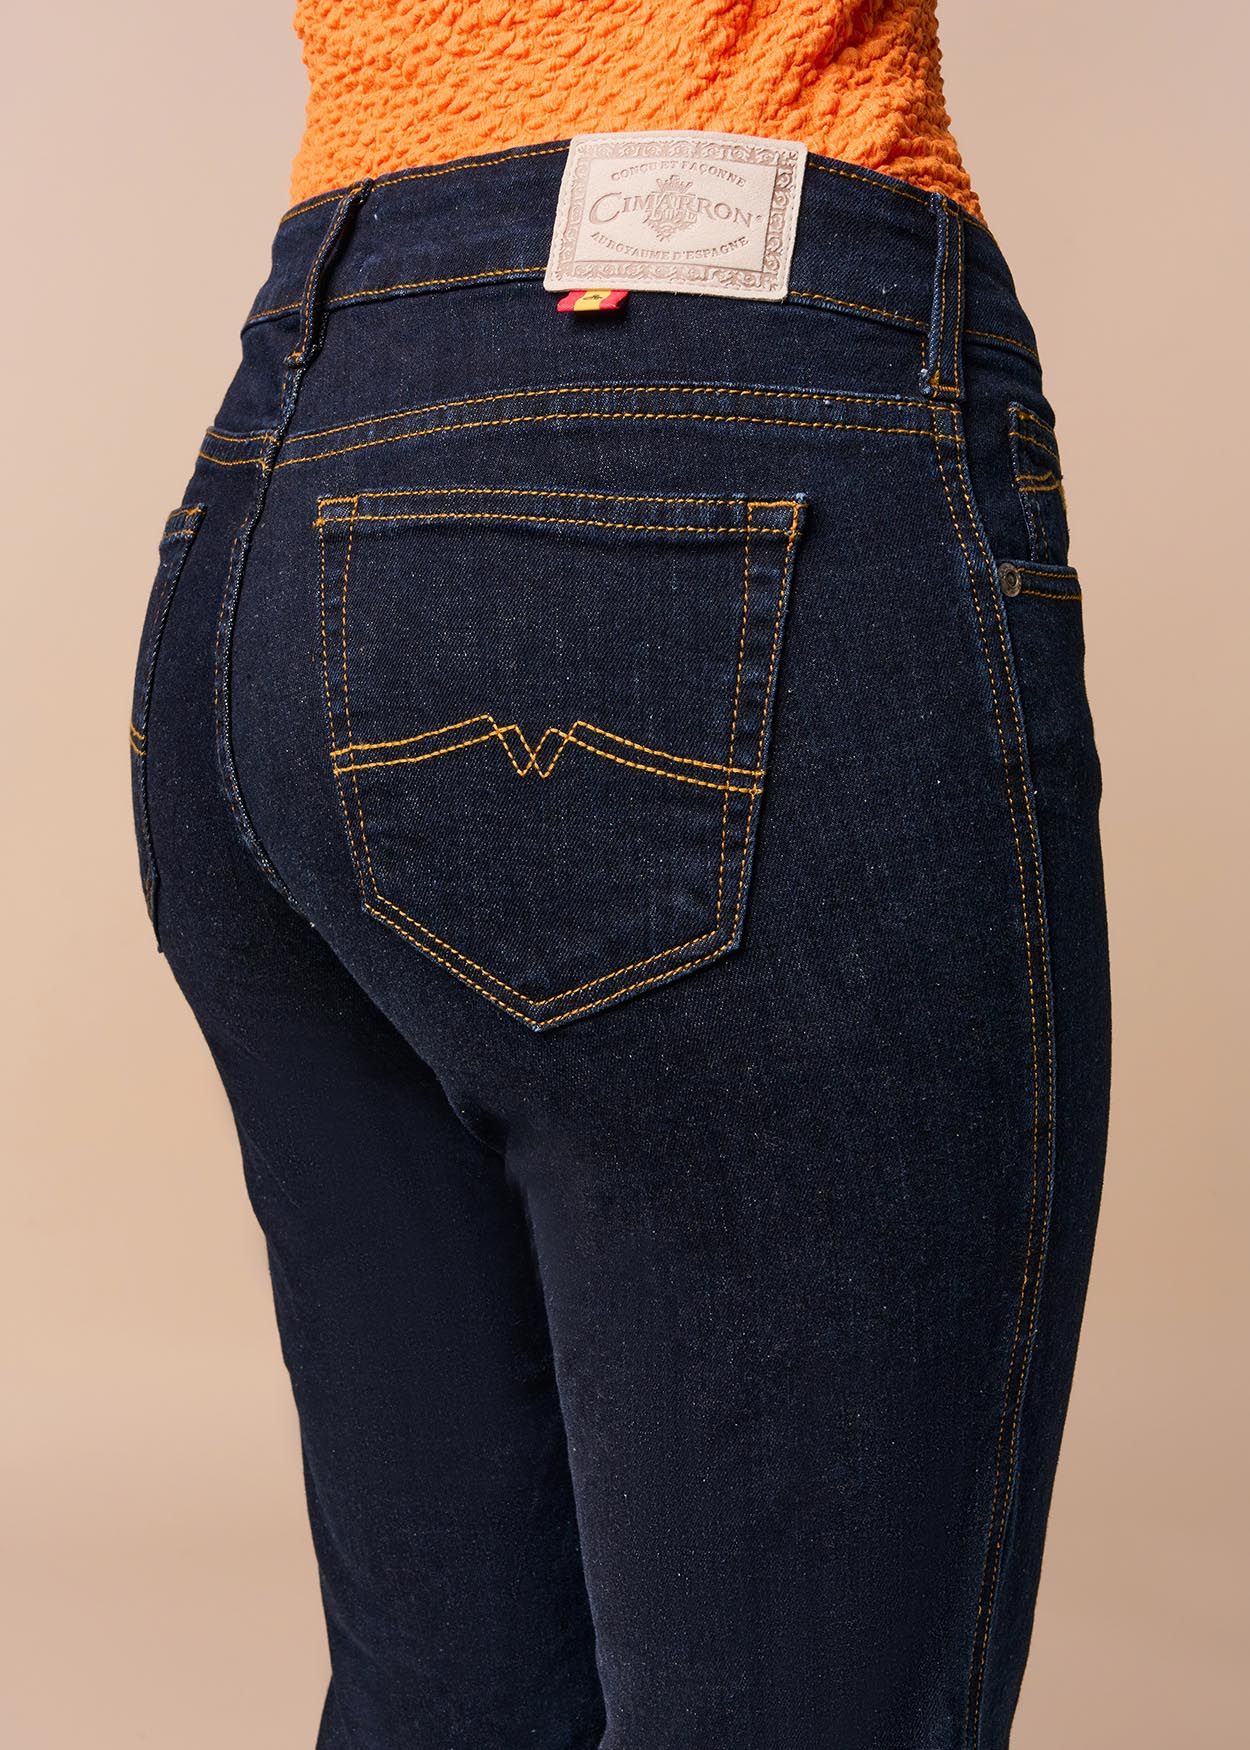 CLAUDIA KYRA - Jeans Taille Basse | Coupe Droite  | Taille en pouces Cimarron